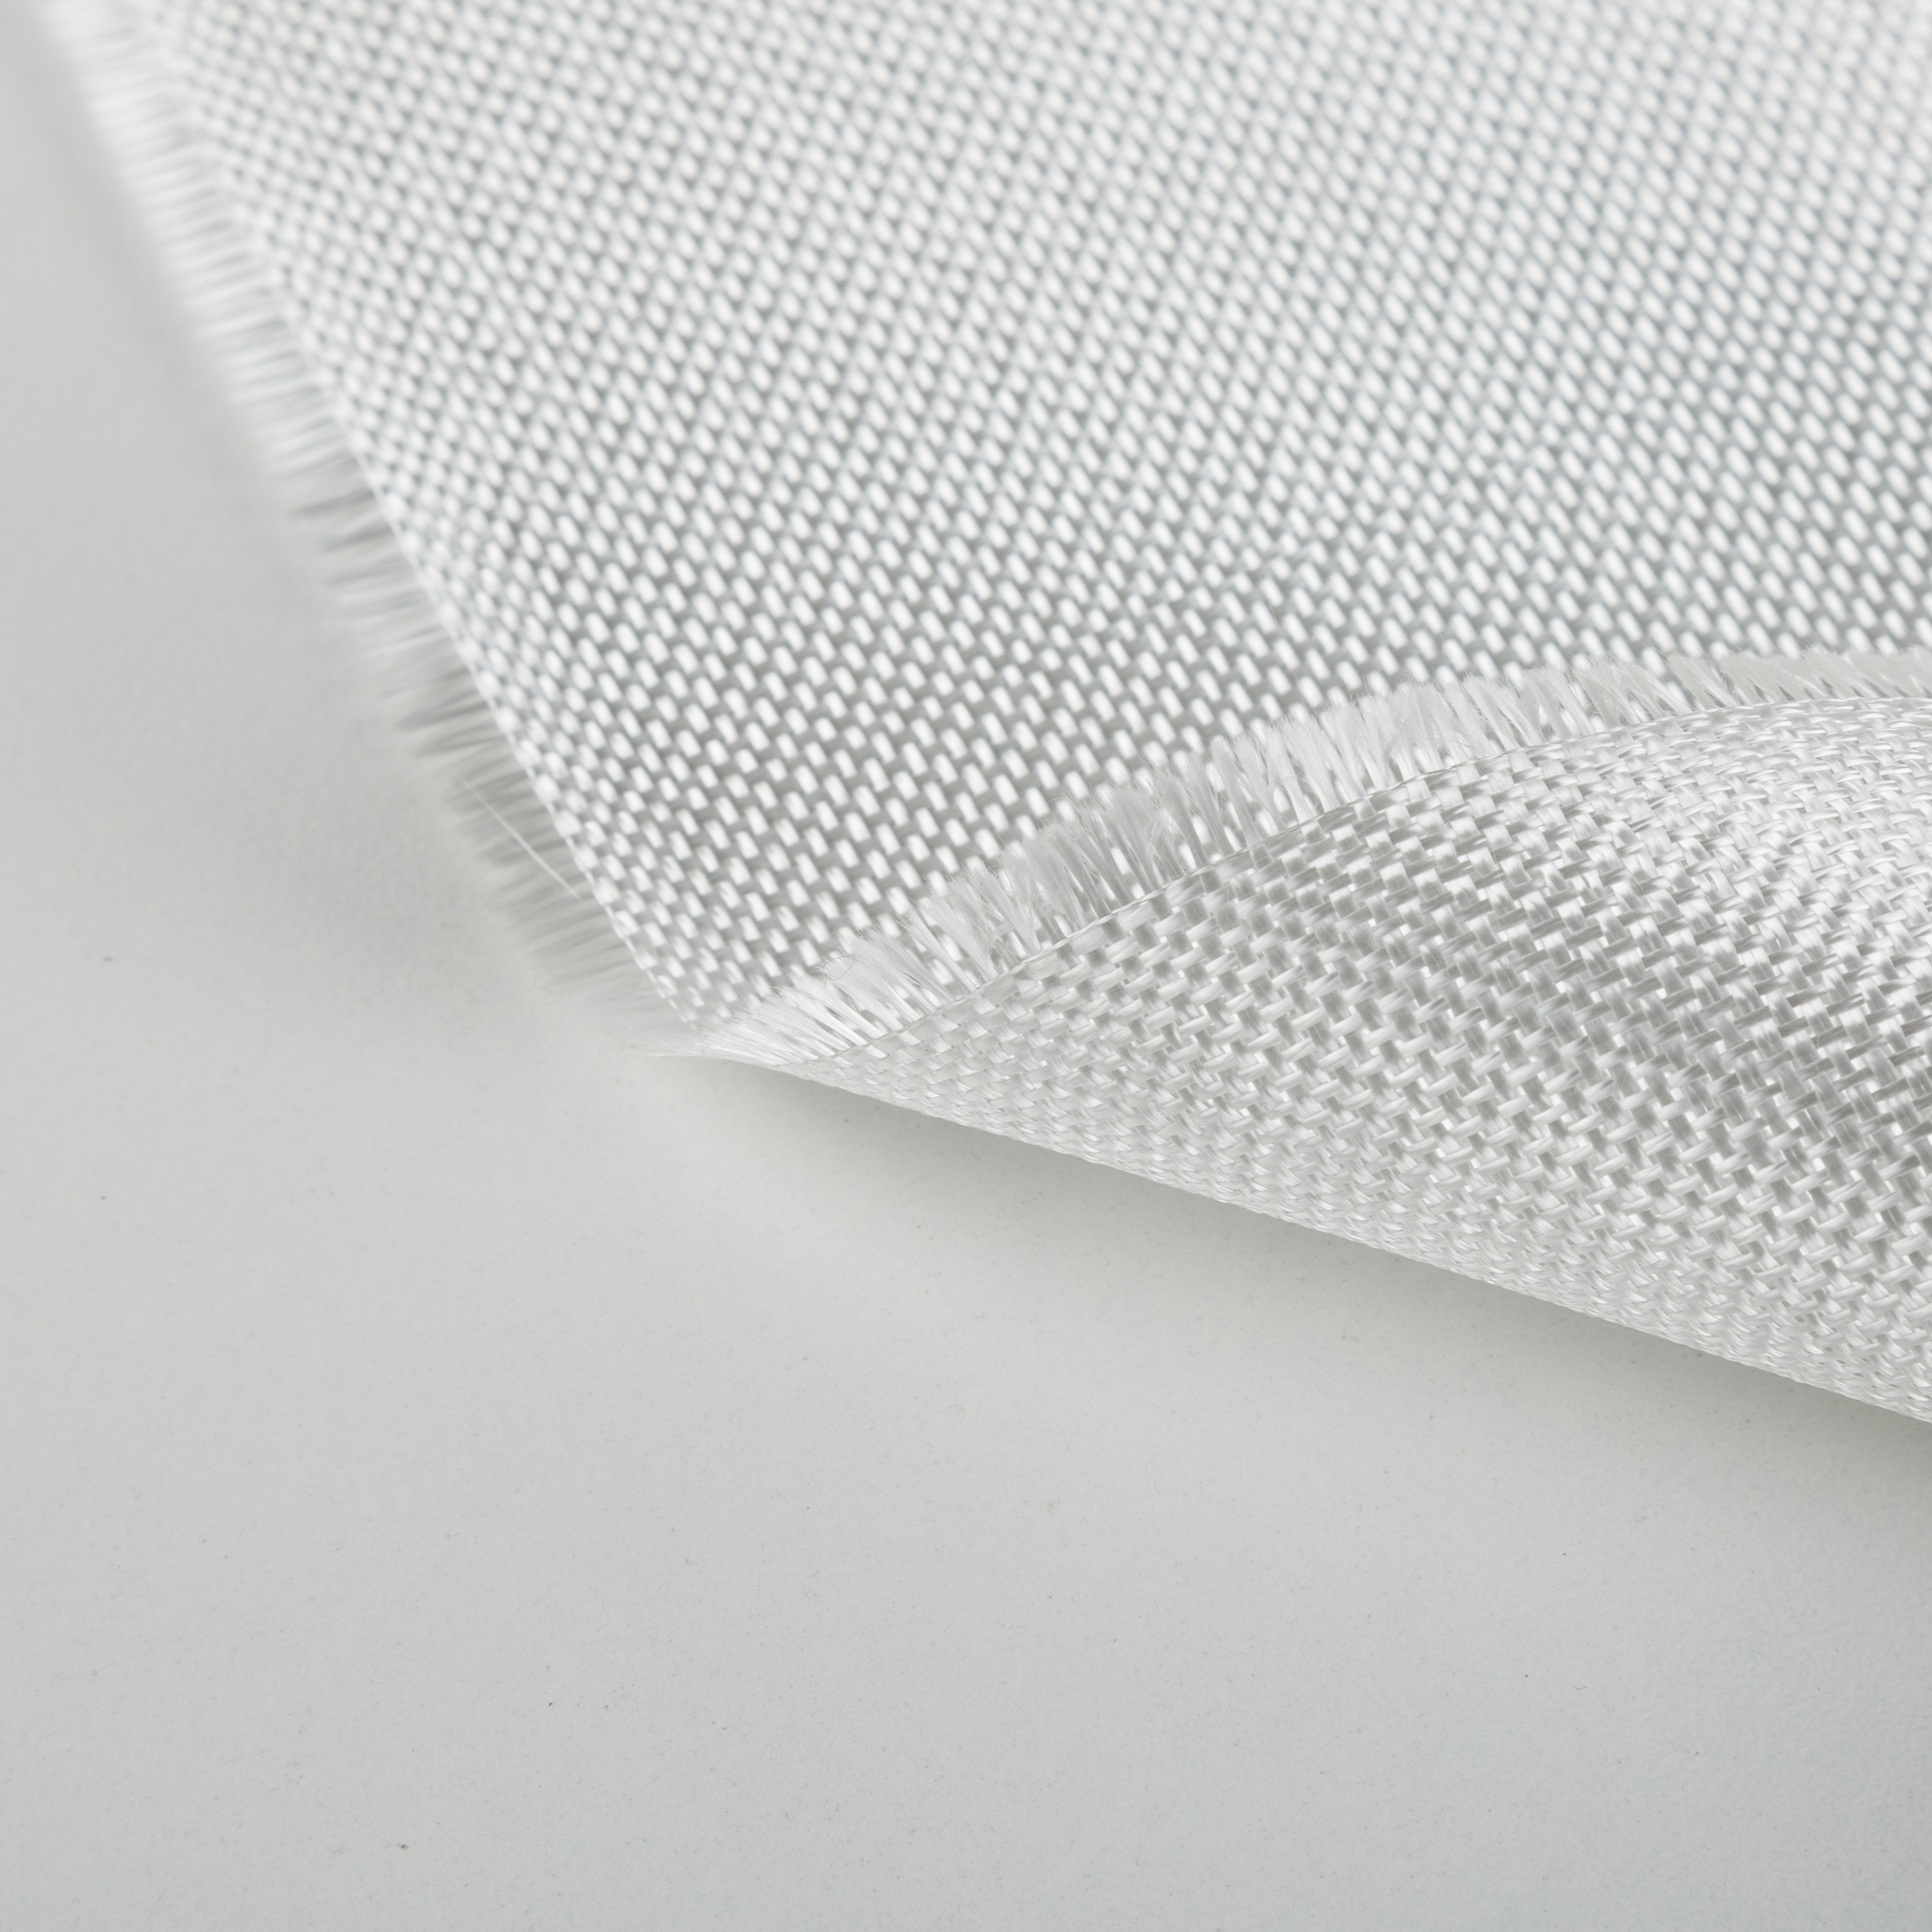 Suministro directo de fábrica Resistencia química Excelente tela de tejido liso de fibra de vidrio